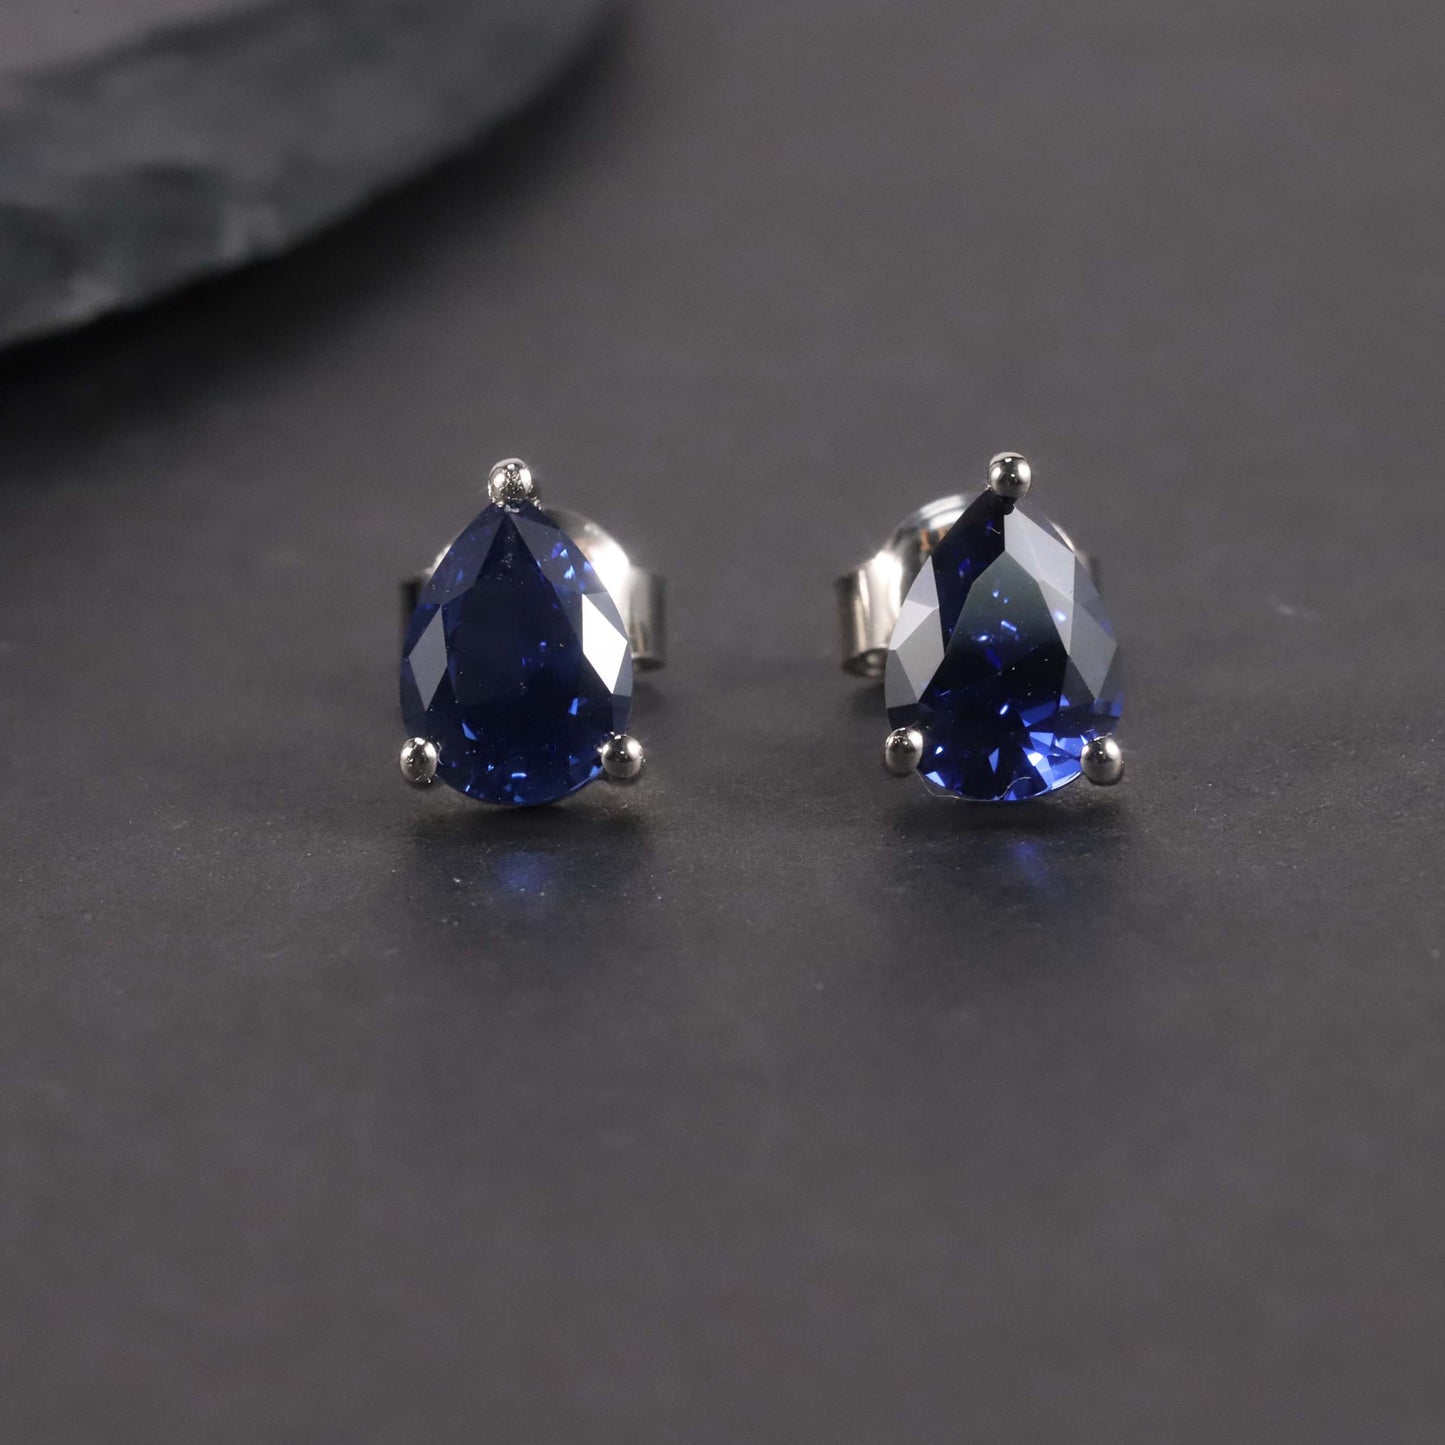 Pear Cut Stud Earrings in Sterling Silver - Sapphire